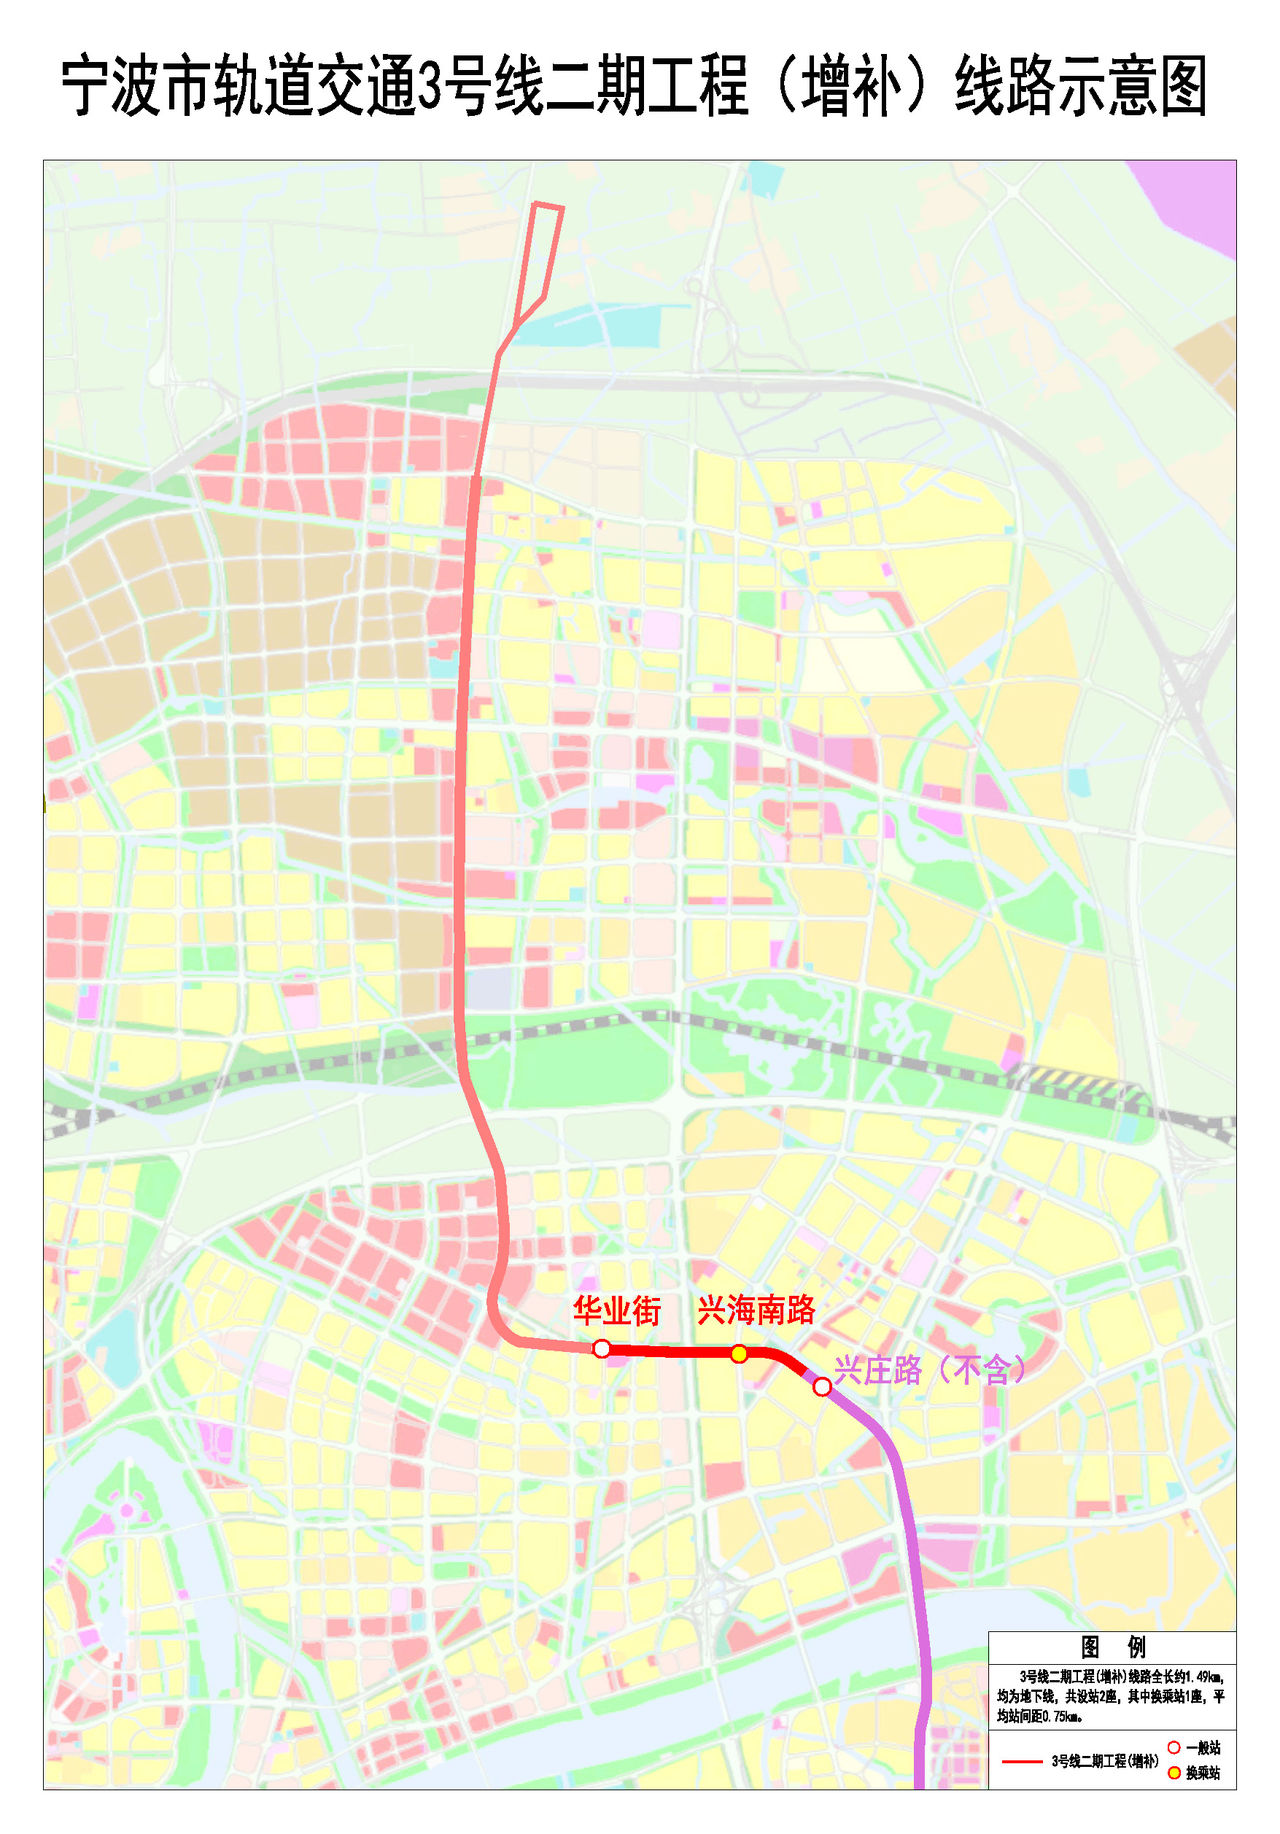 寧波軌道交通3號線二期工程建設規划走向圖